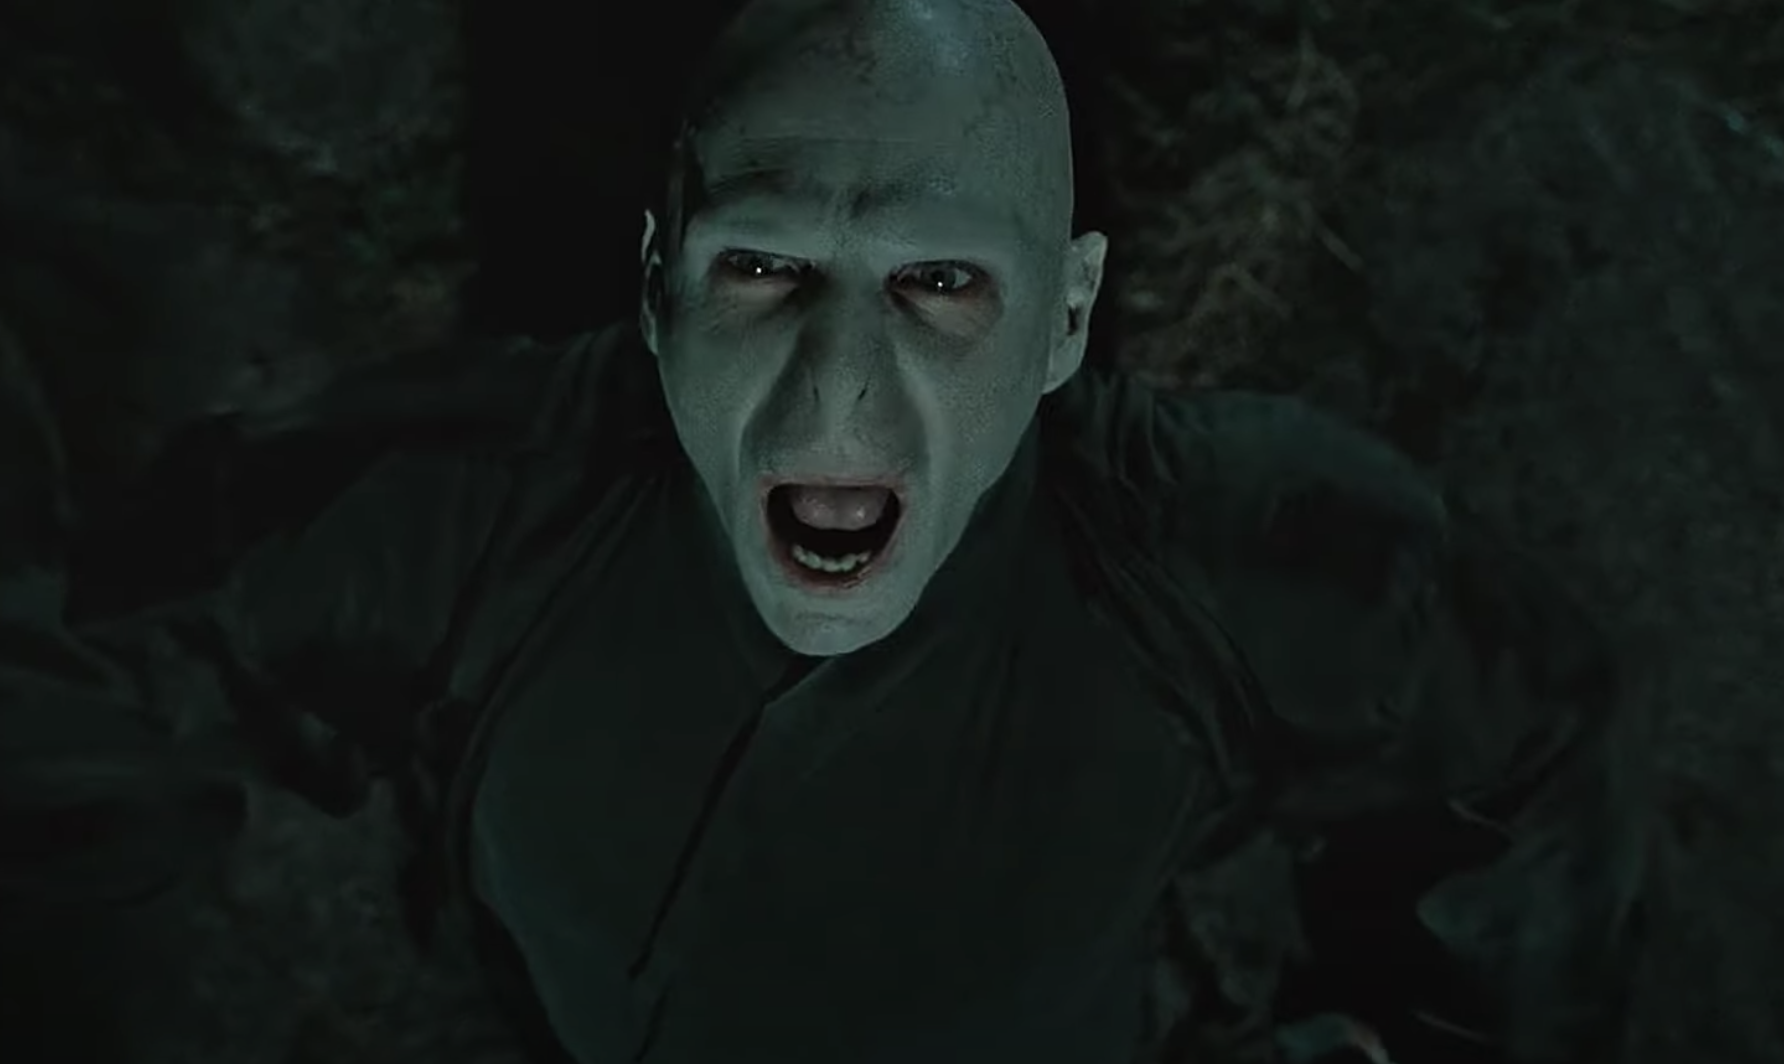 Voldemort screams